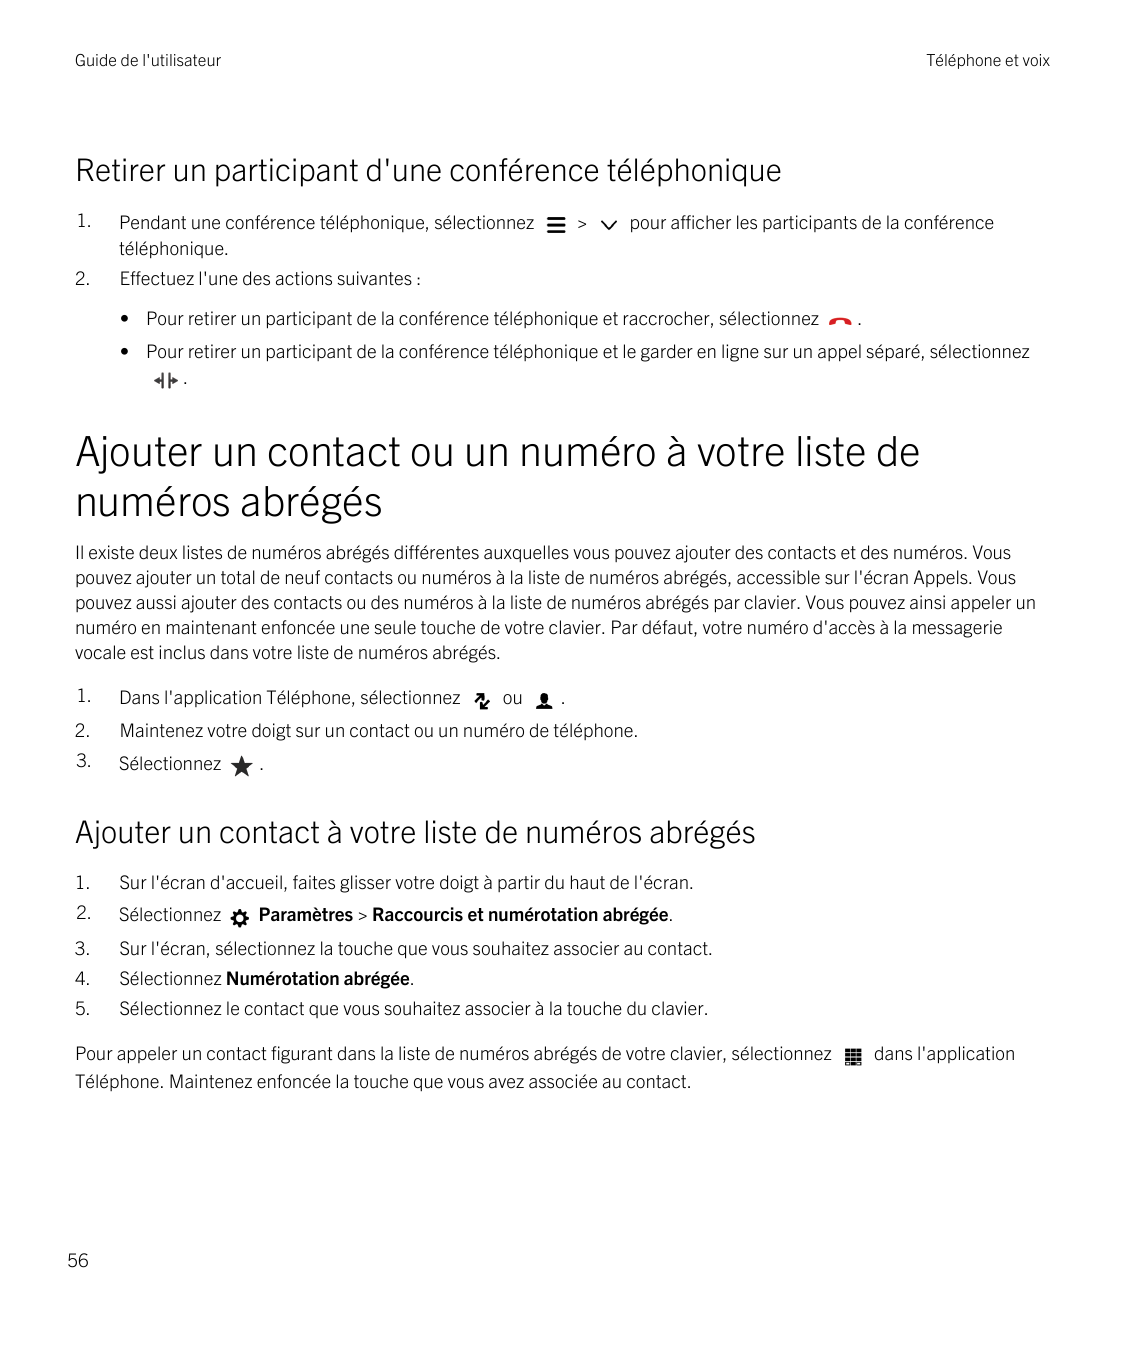 Guide de l'utilisateurTéléphone et voixRetirer un participant d'une conférence téléphonique1.Pendant une conférence téléphonique